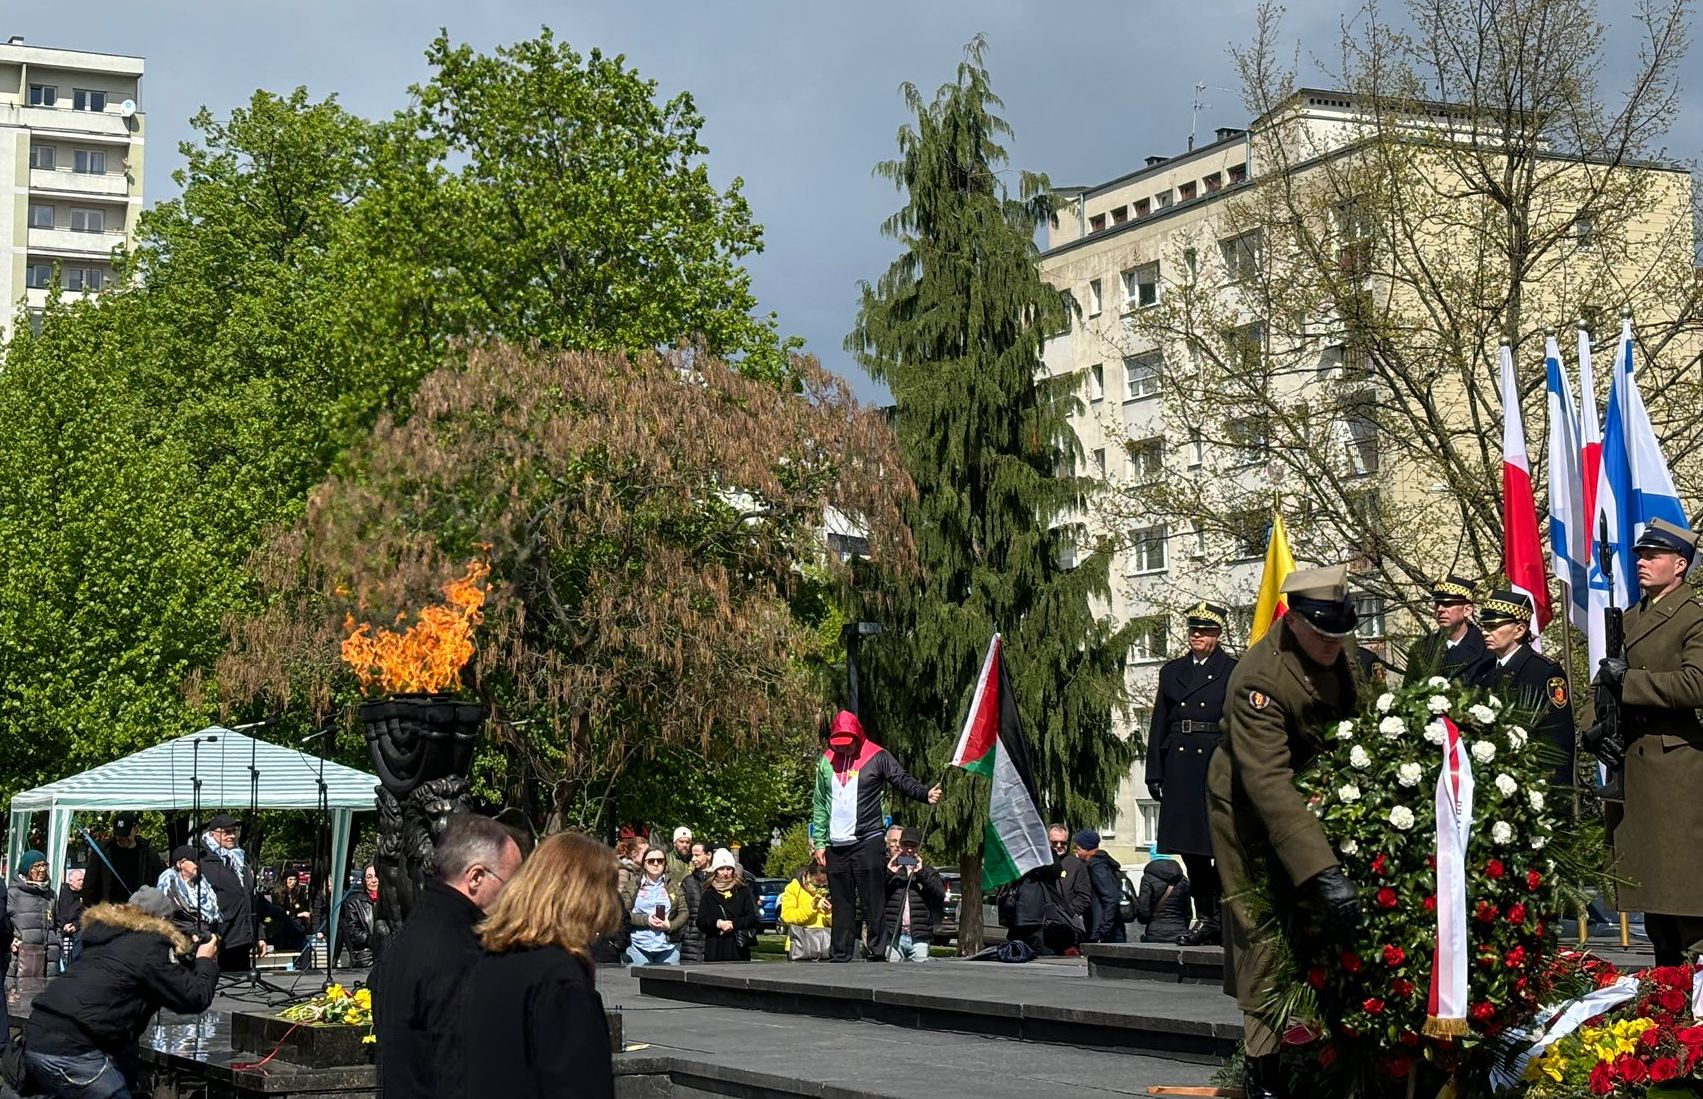 מפגין פרו-פלסטיני הודח מהנצחת מרד גטו ורשה בפולין